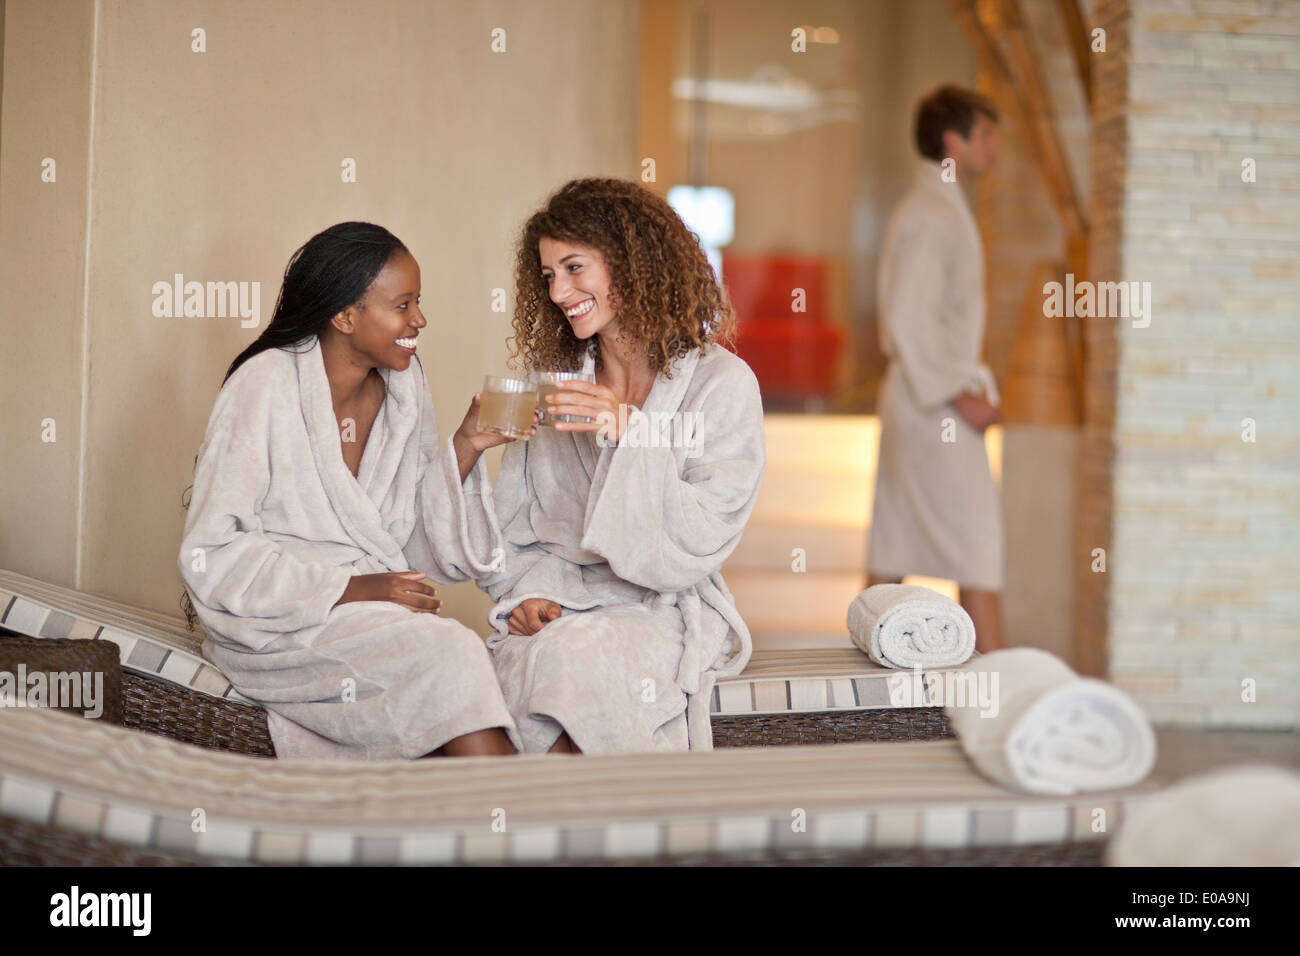 Dos jóvenes mujeres que conversan sobre las reposeras en el balneario Foto de stock